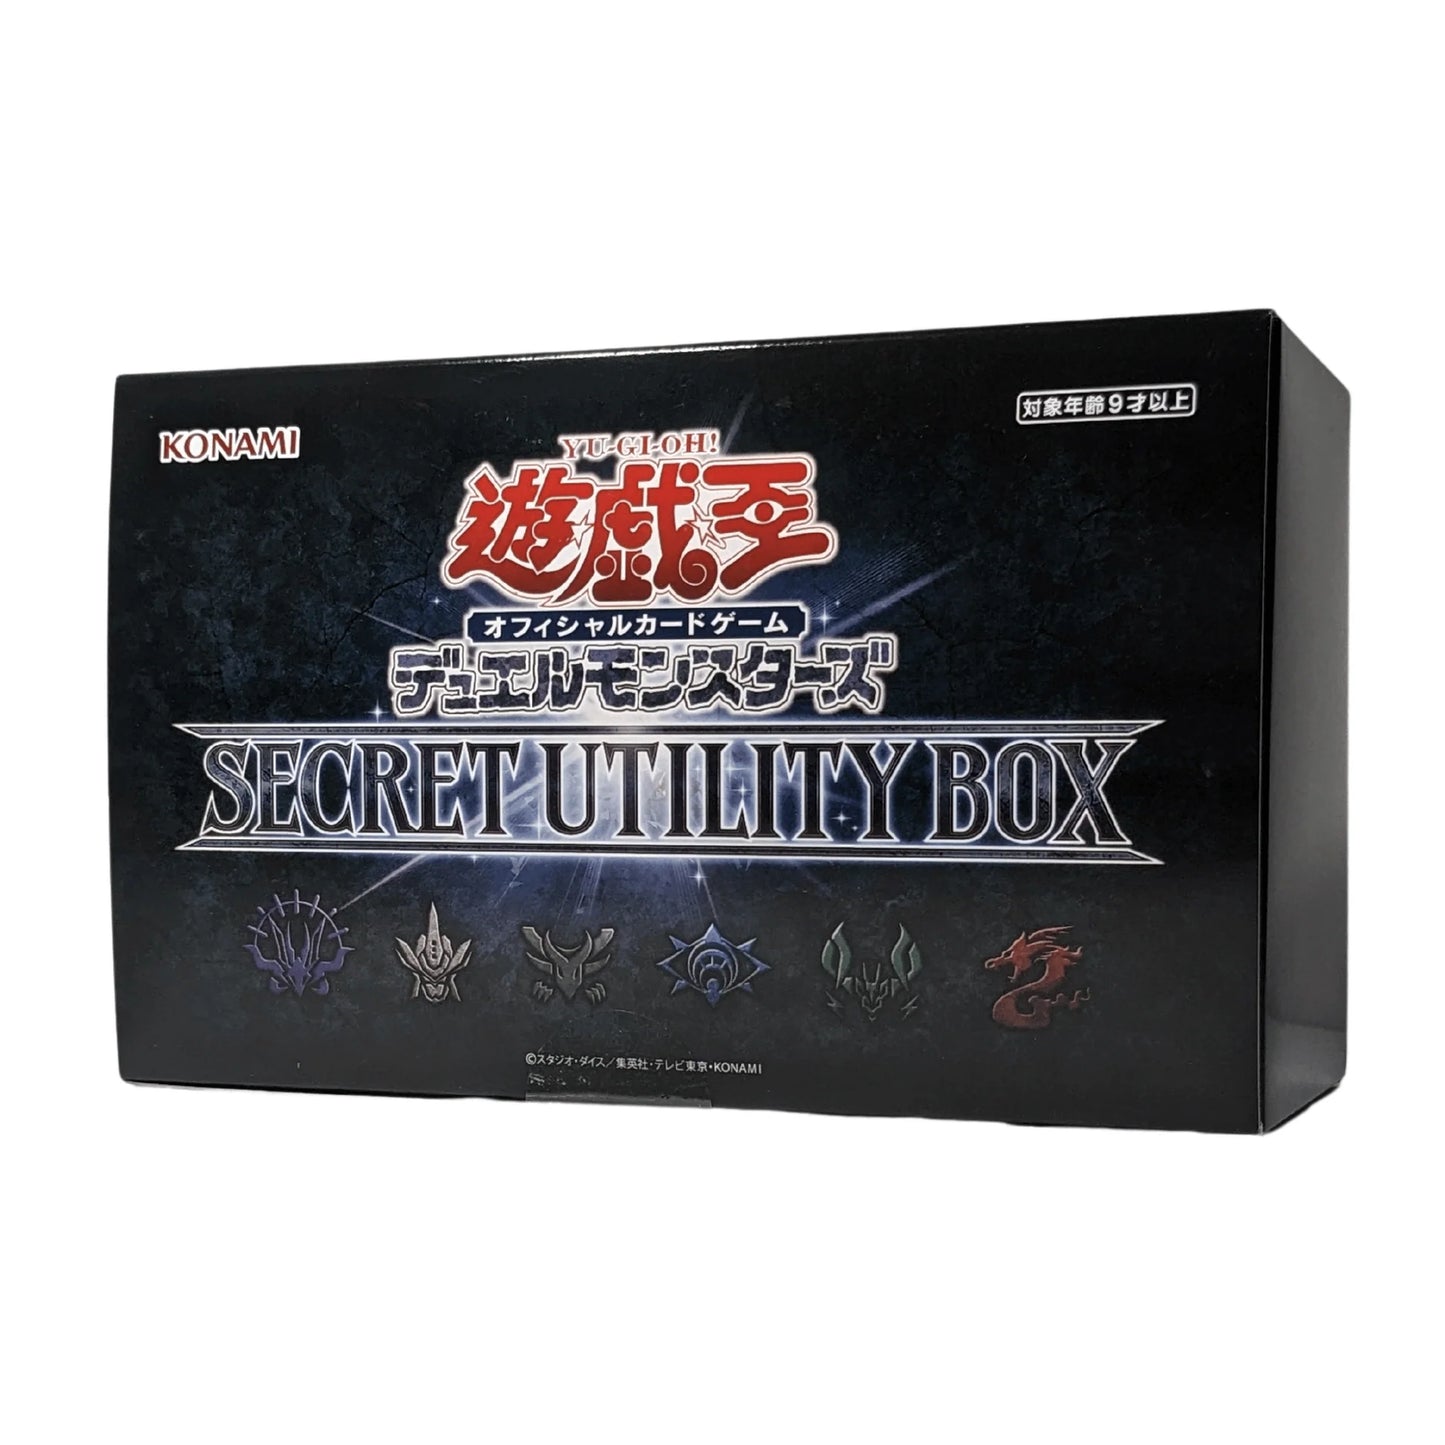 Secret Utility Box (Japanese)